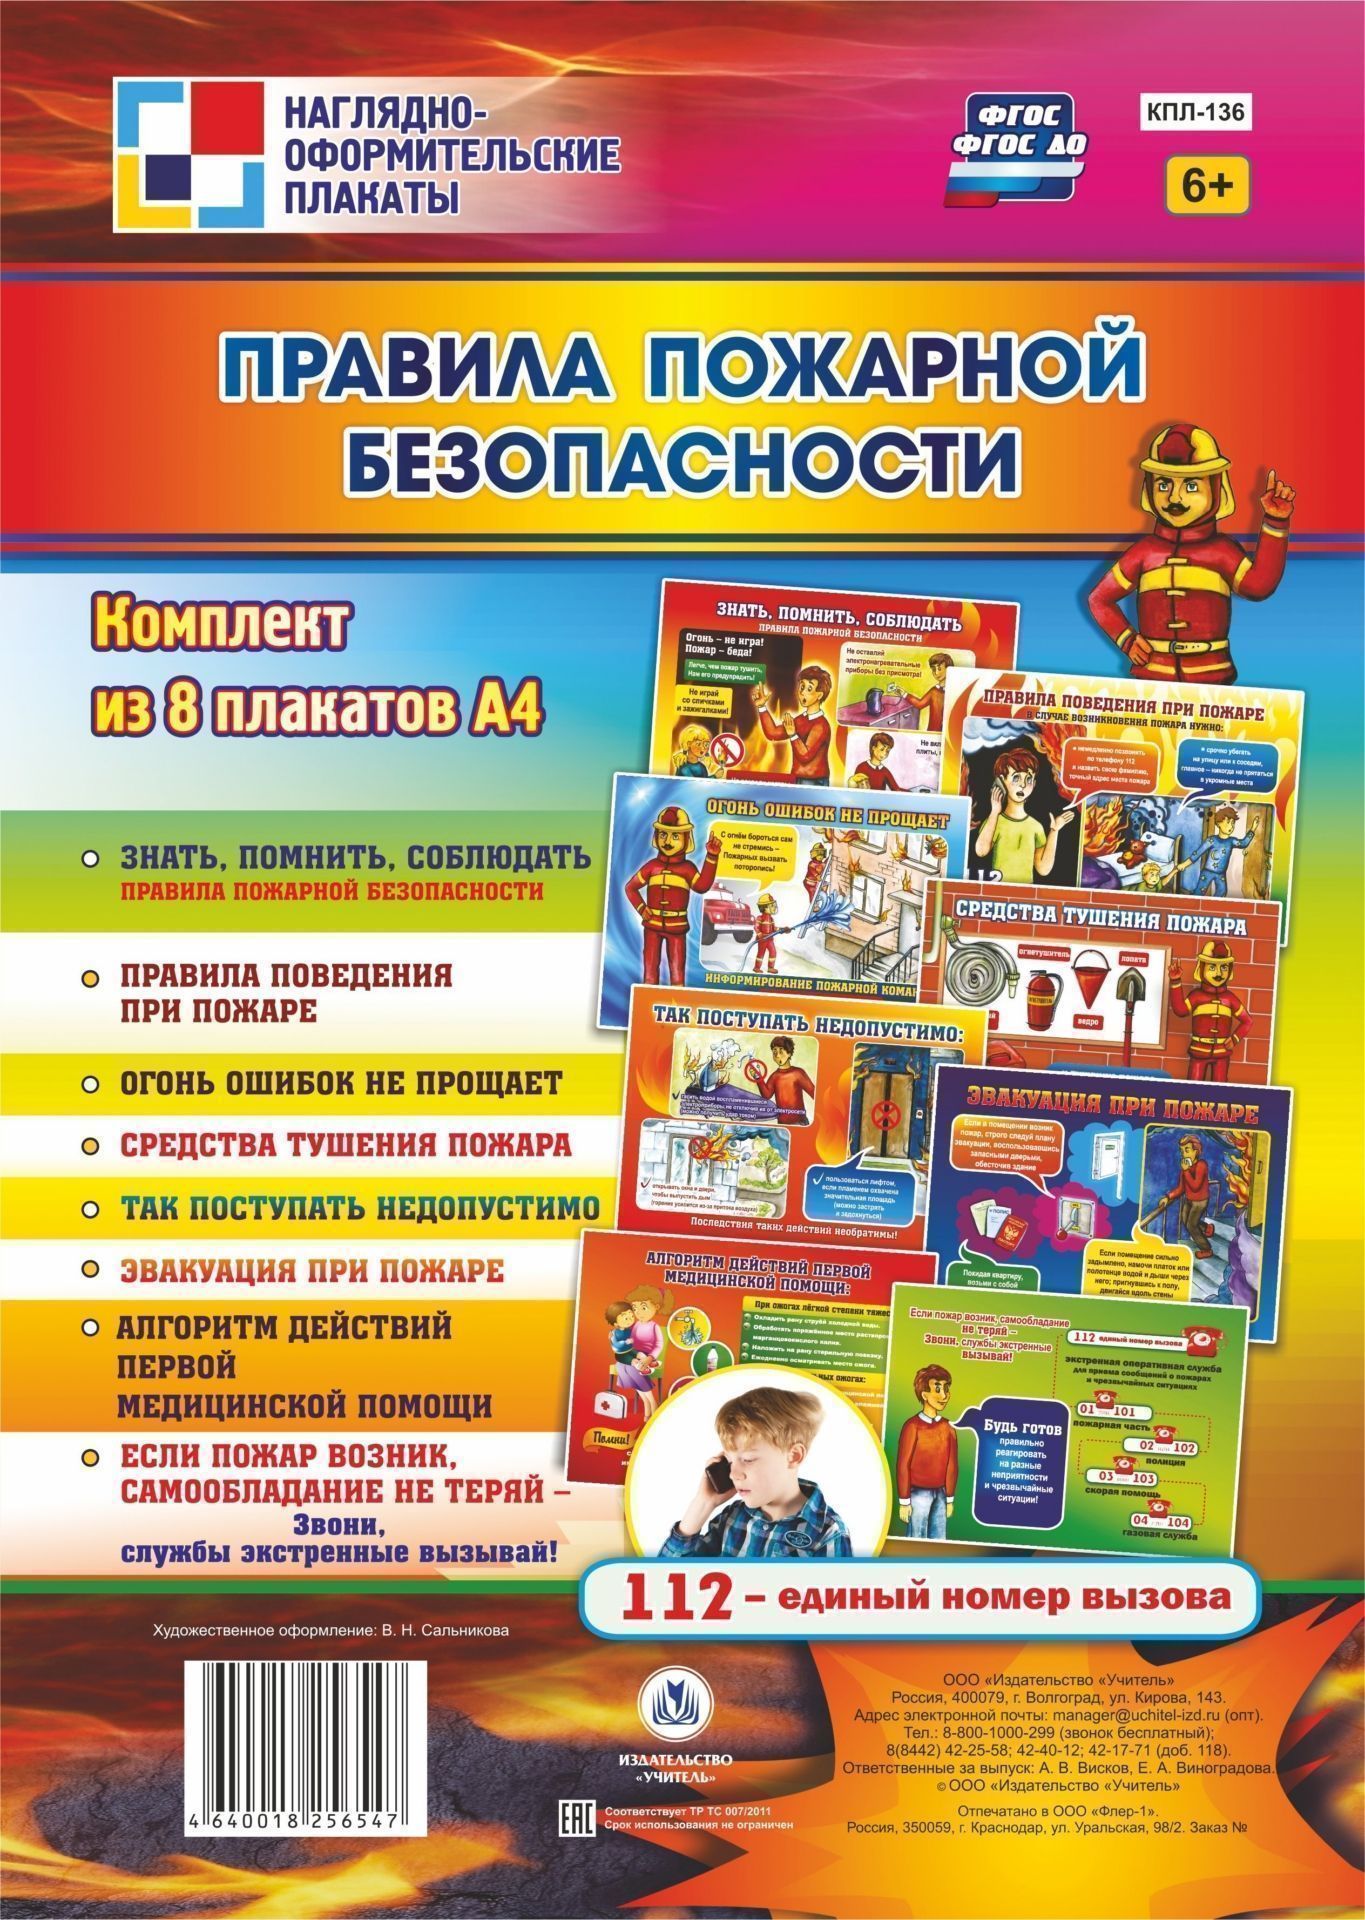 Комплект плакатов Правила пожарной безопасности комплект плакатов правила безопасности дома и в детском саду 4 плаката фгос